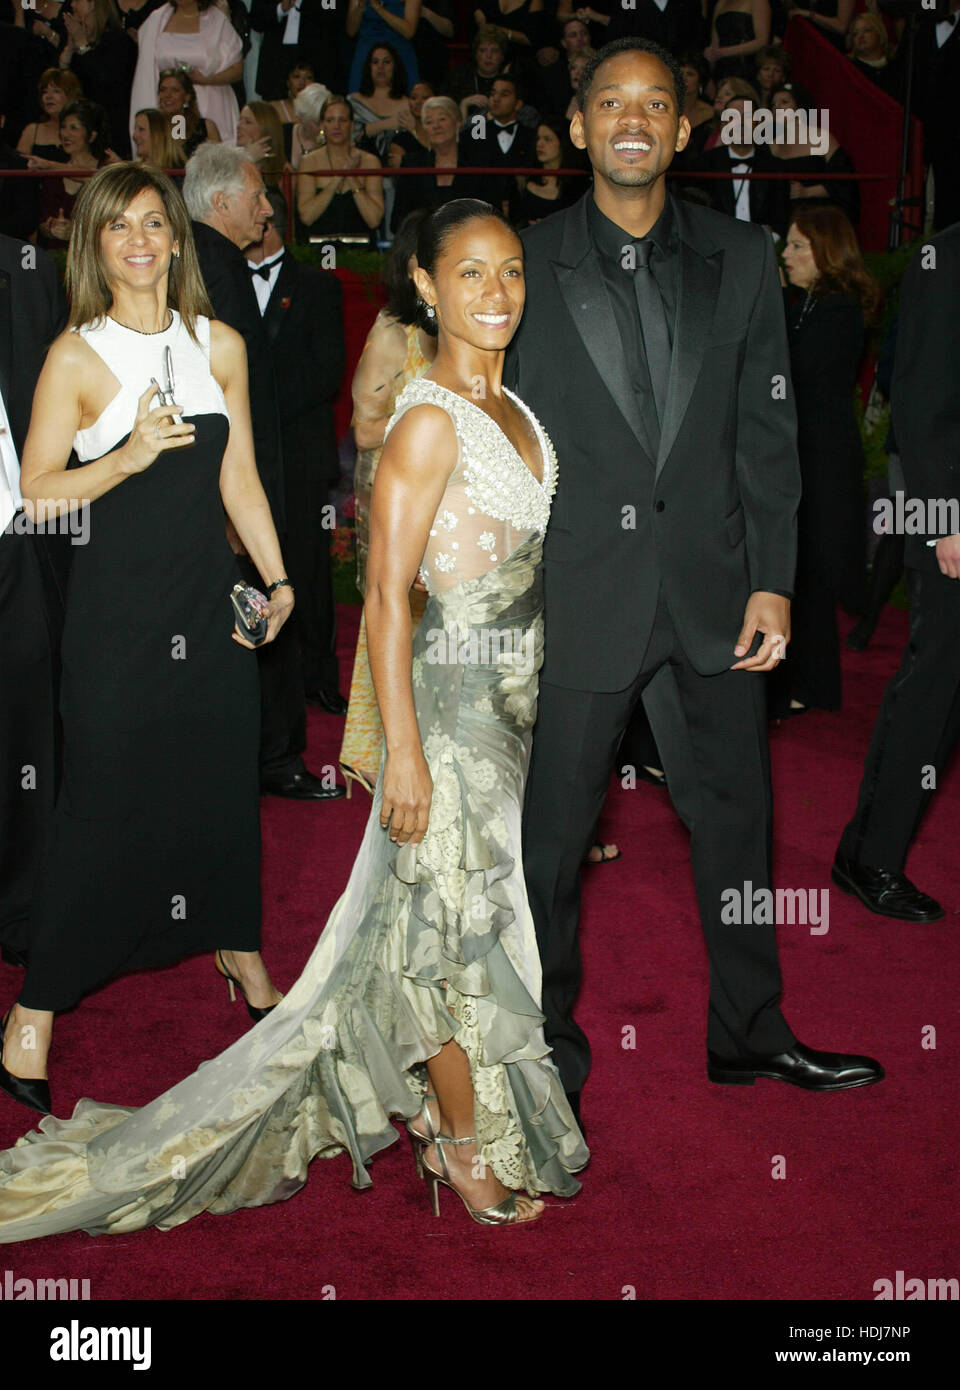 Will Smith e Jada Pinkett-Smith presso l'Academy Awards in Hollywood, la California il 29 febbraio 2004. Photo credit: Francesco Specker Foto Stock